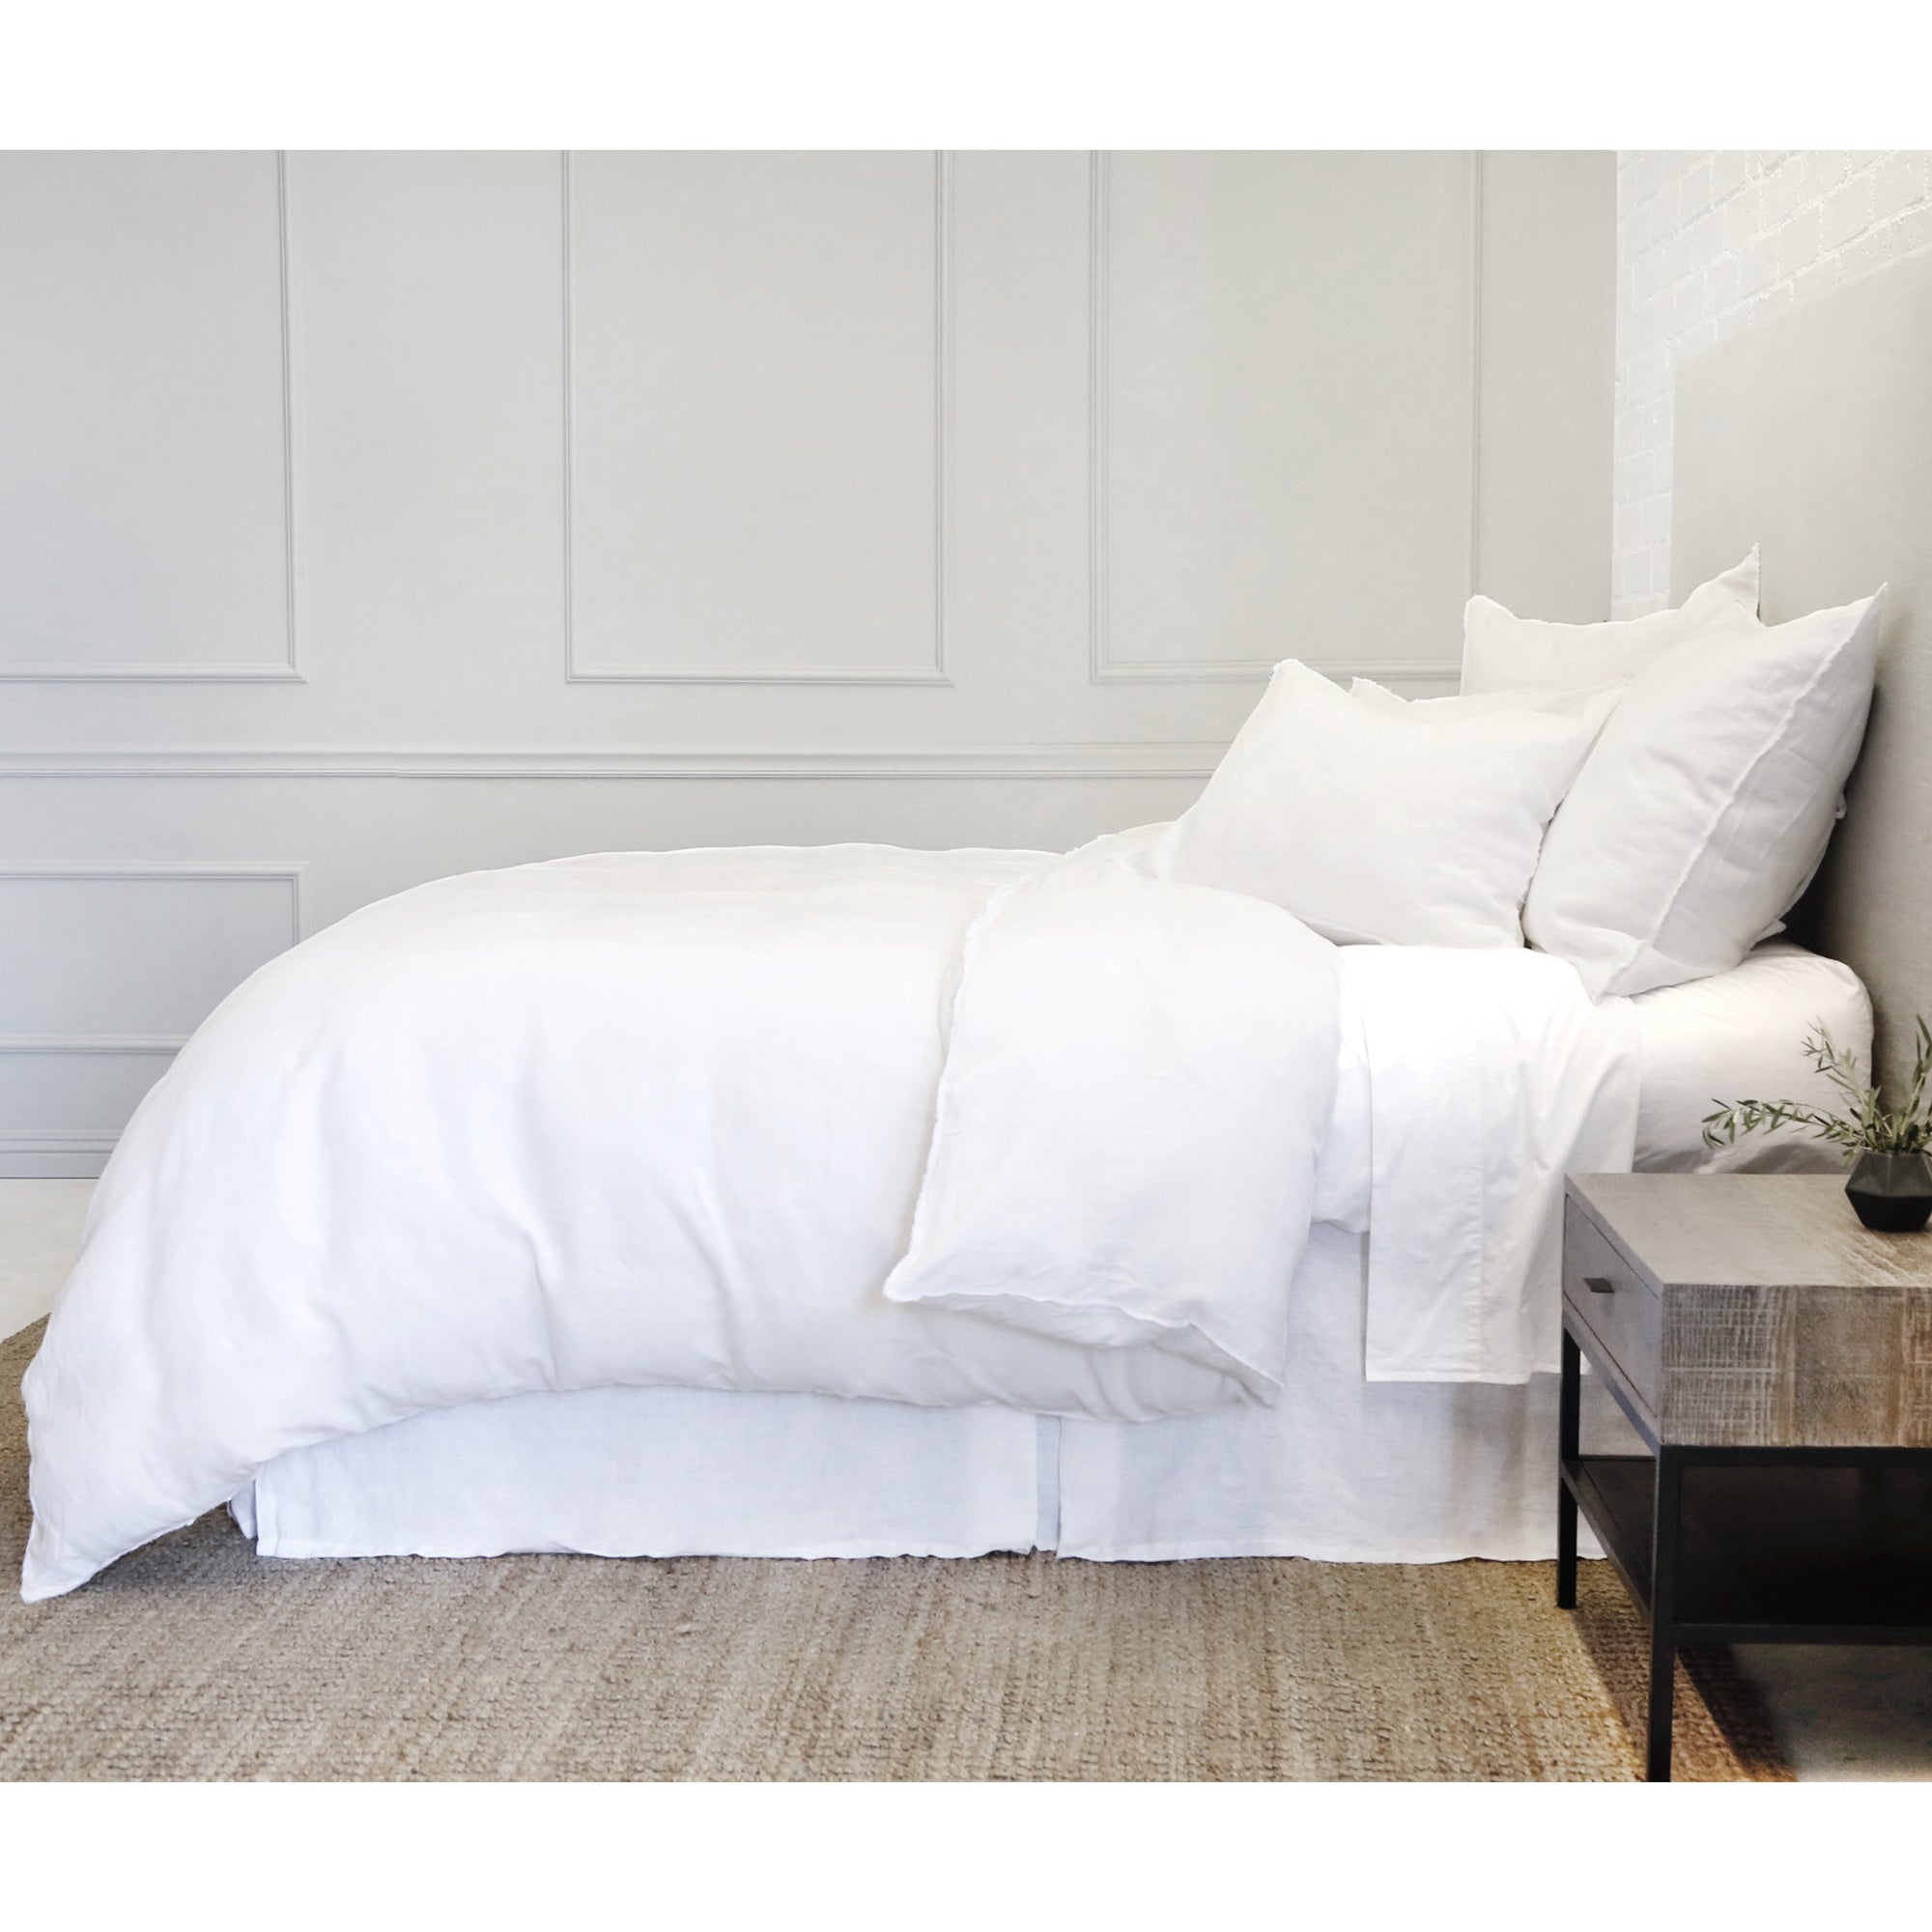 blair - white color - duvet set - pom pom at home